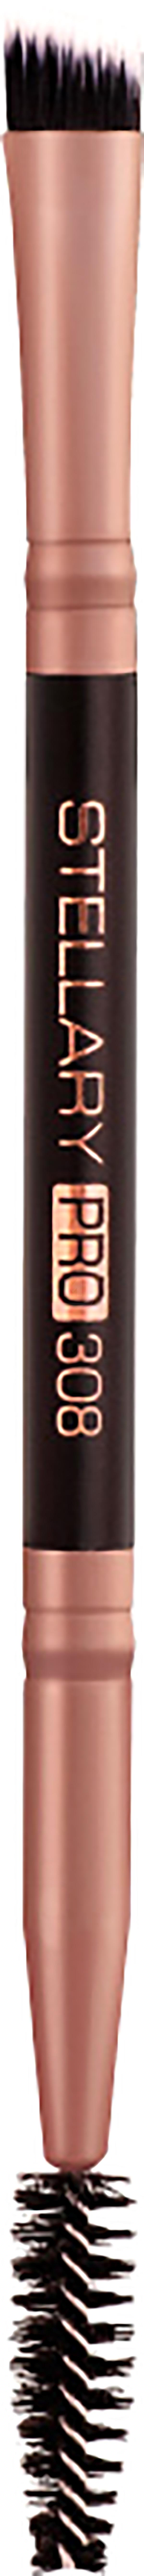 Кисть для бровей STELLARY Pro Brush Duo №308 двухсторонняя, синтетическая, черная billion dollar brows кисть для растушевки карандаша для бровей